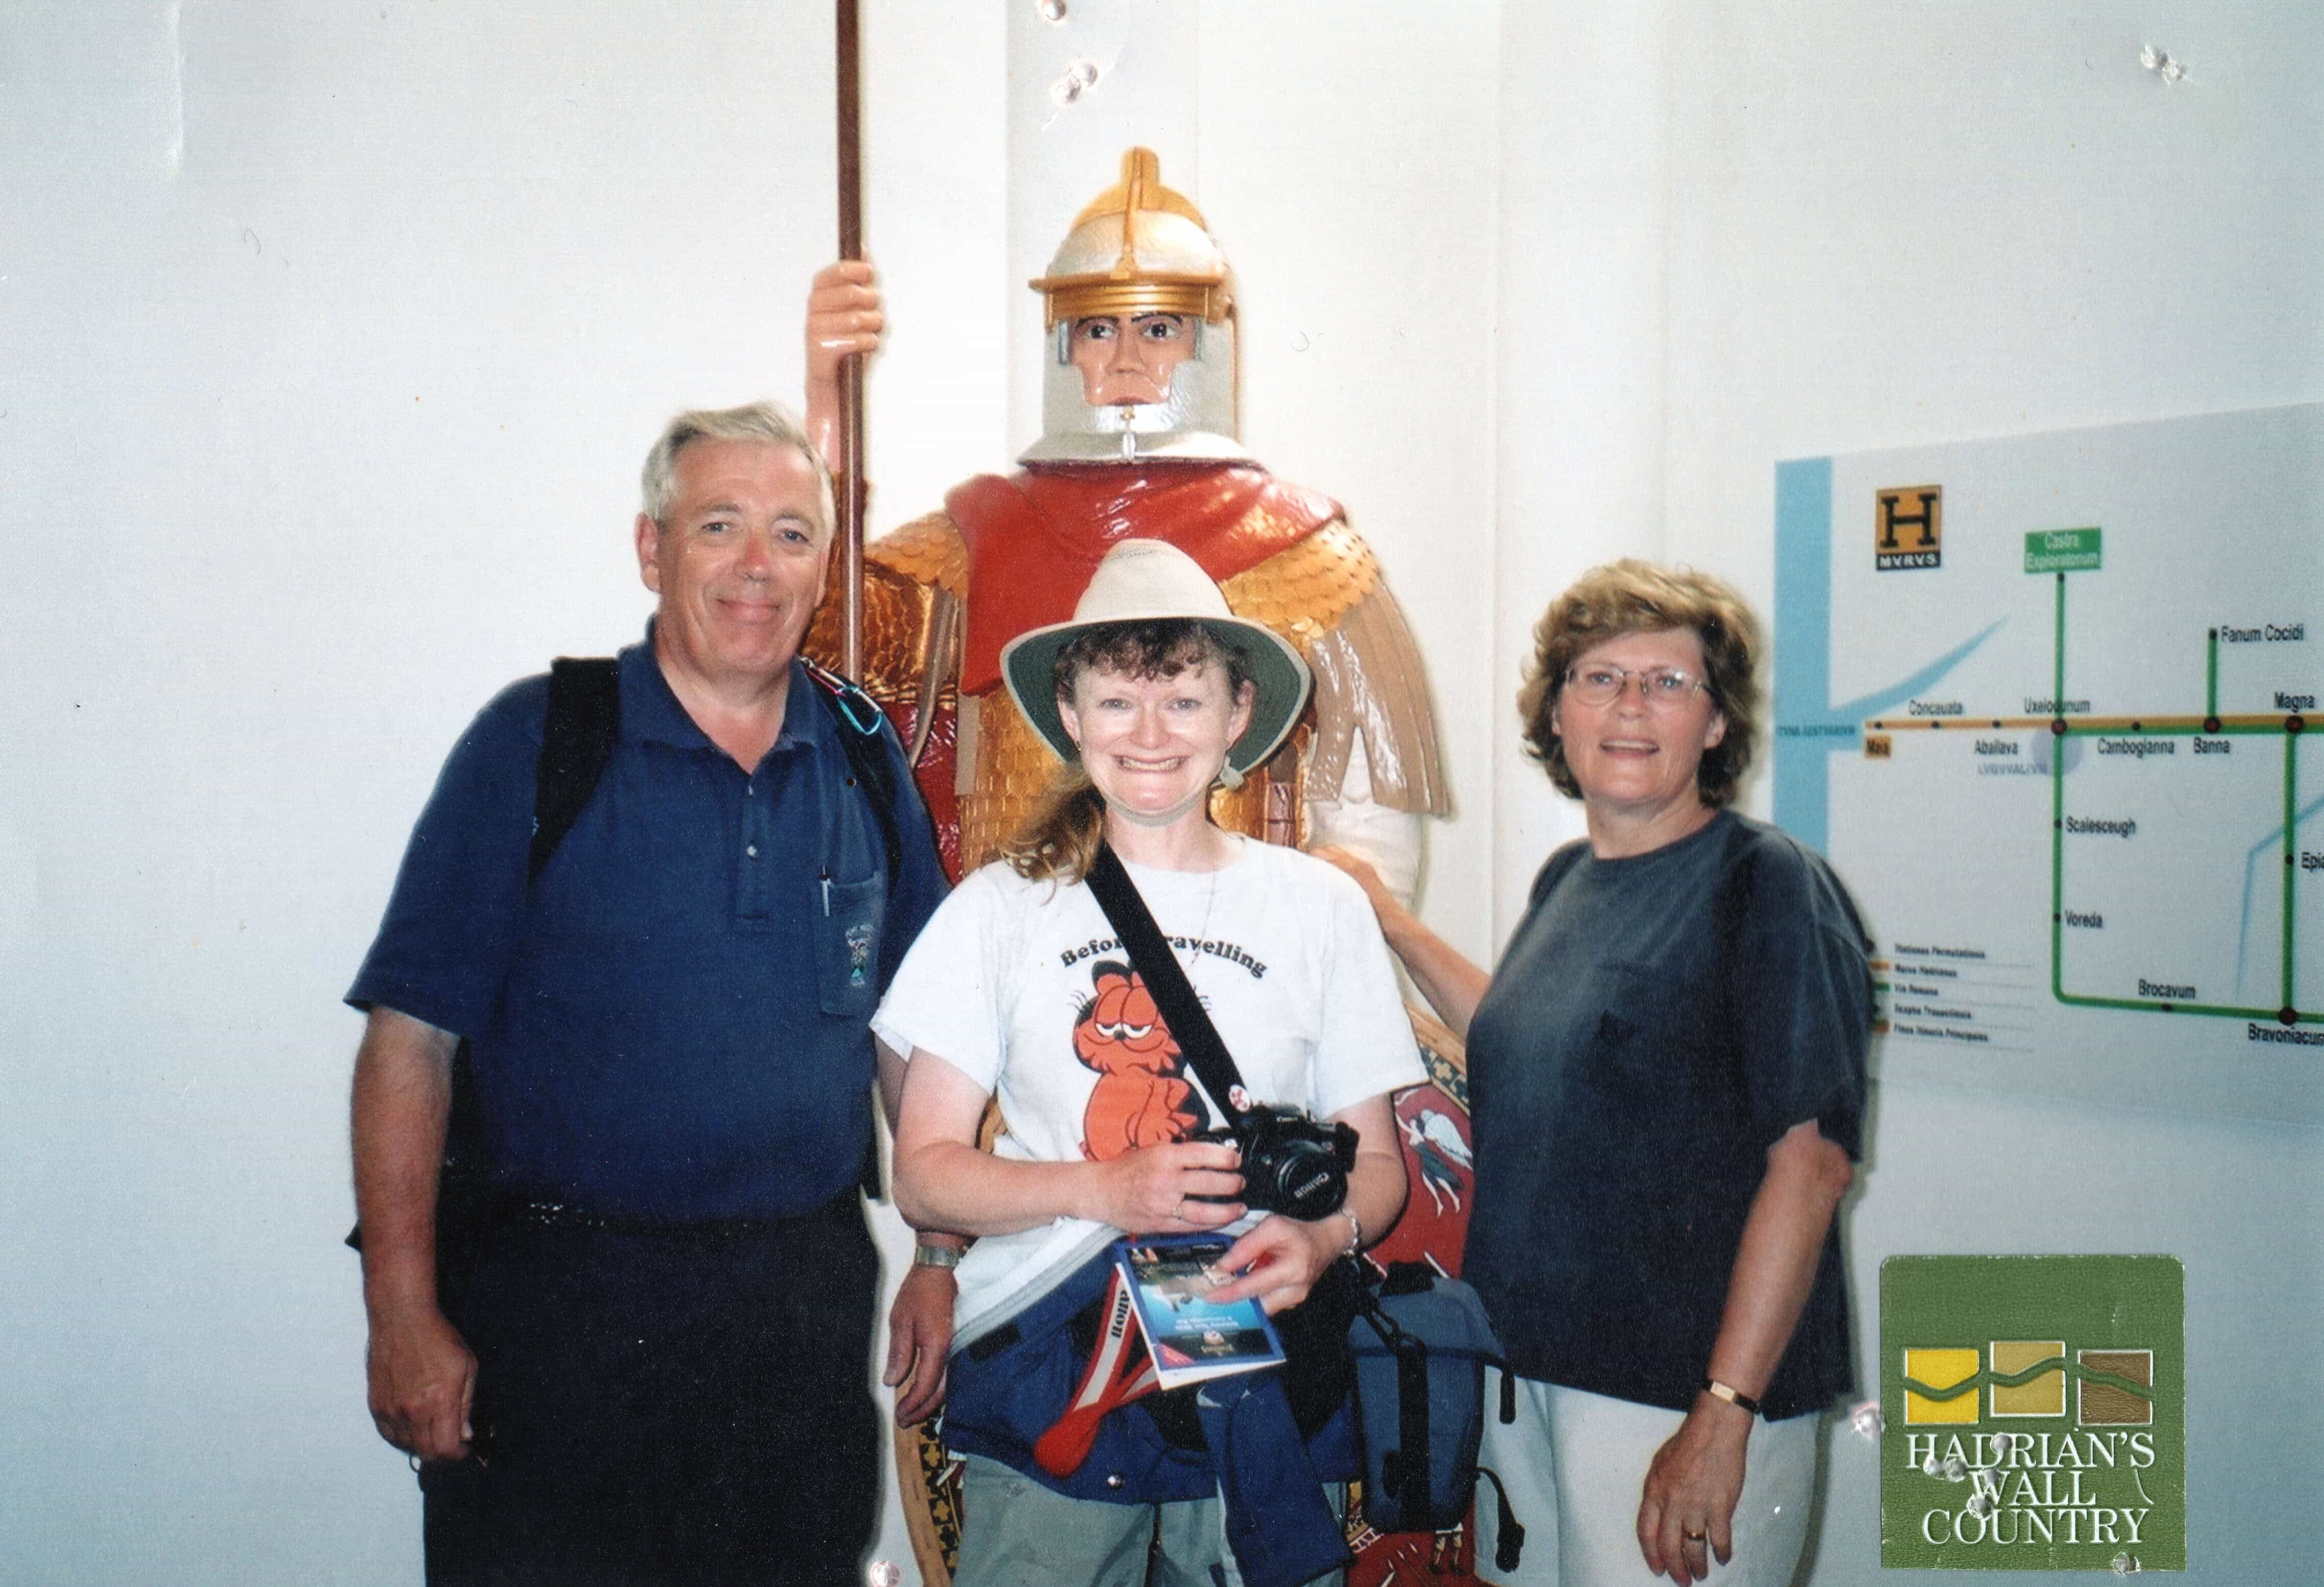 Diane + Ben Gwaltneg + Karen walking holiday at Hadrian's Wall